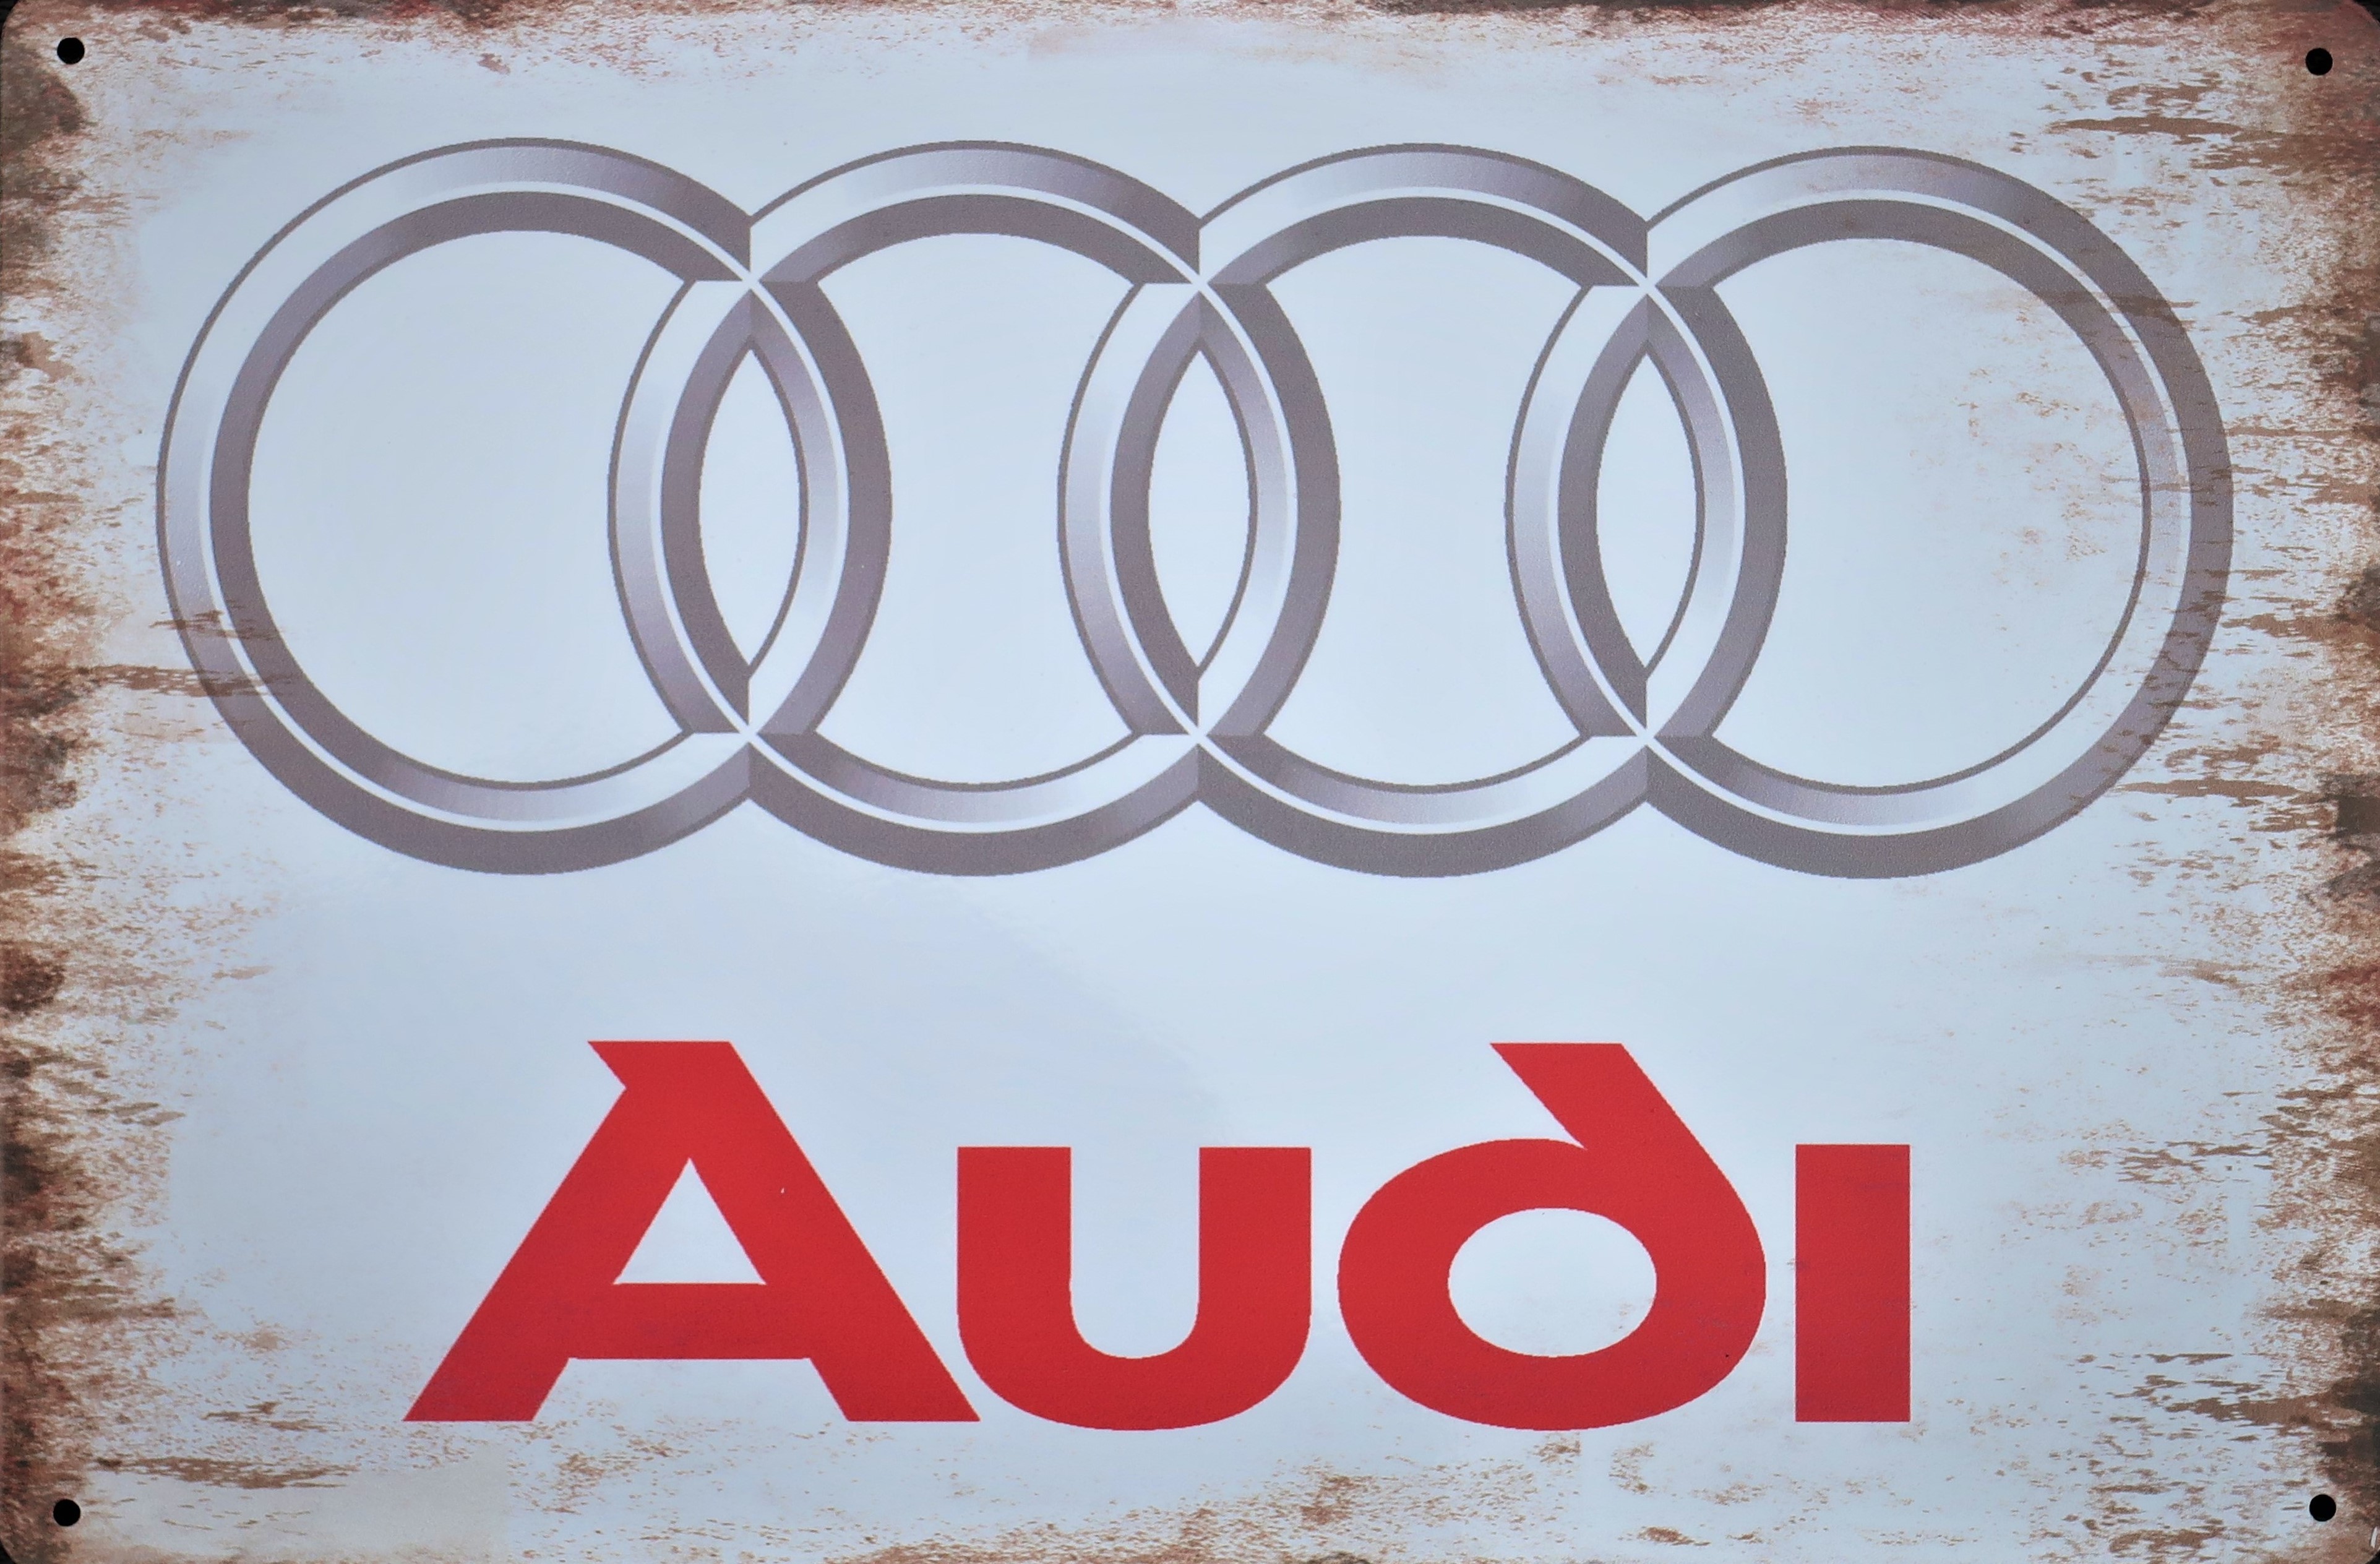 Audi Aluminium Garage Art Metal Sign 30cm x 20cm - 12 Inches x 8 Inches